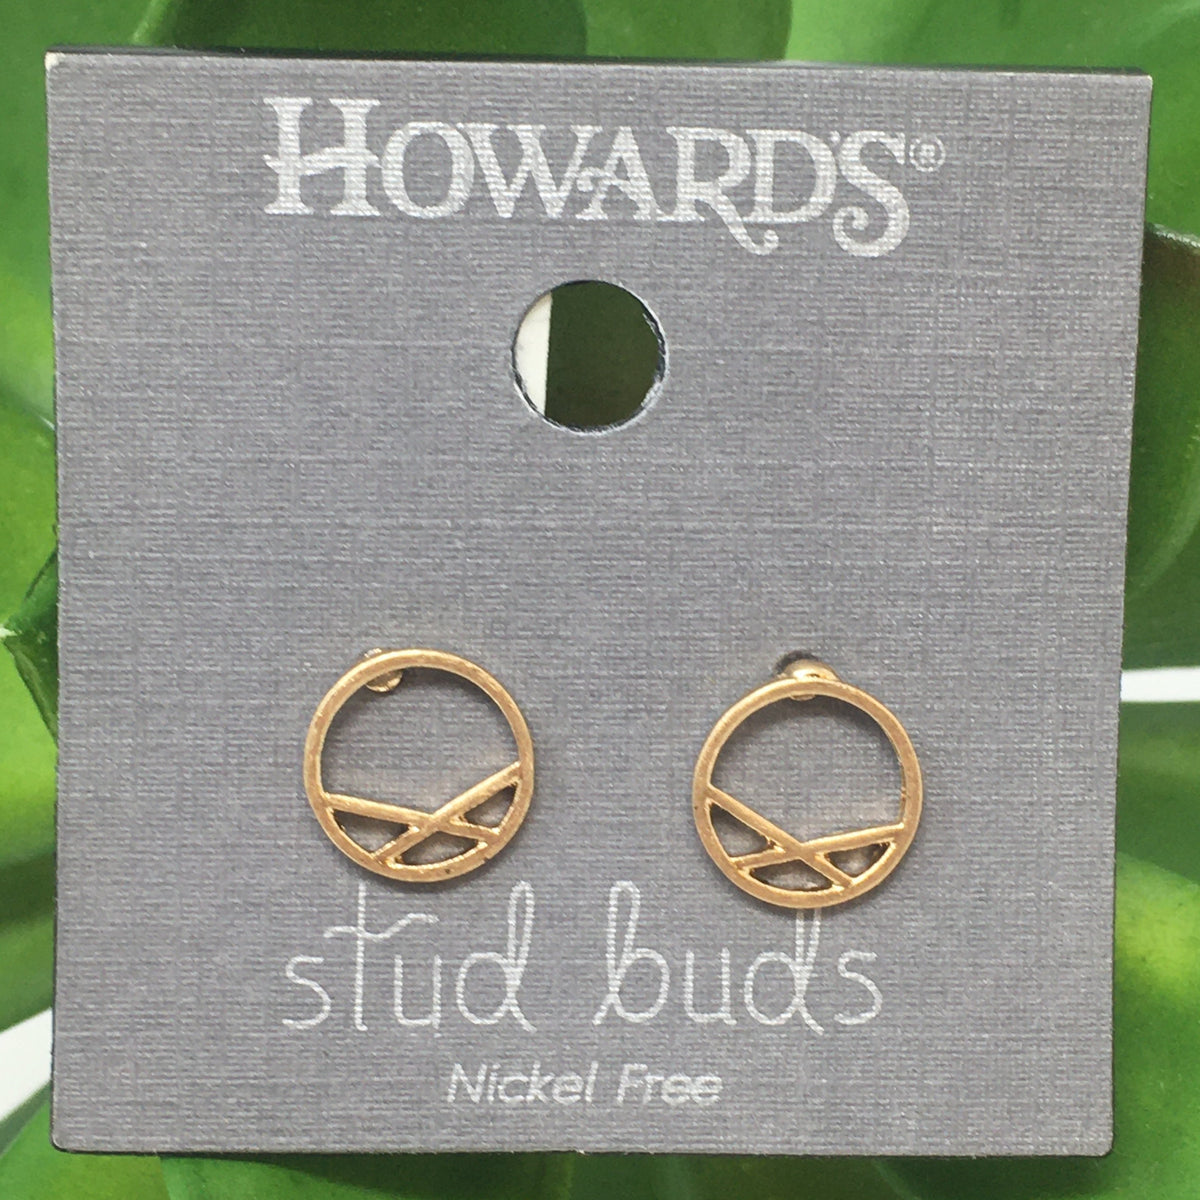 Circle w/ Lines Stud Buds Earrings